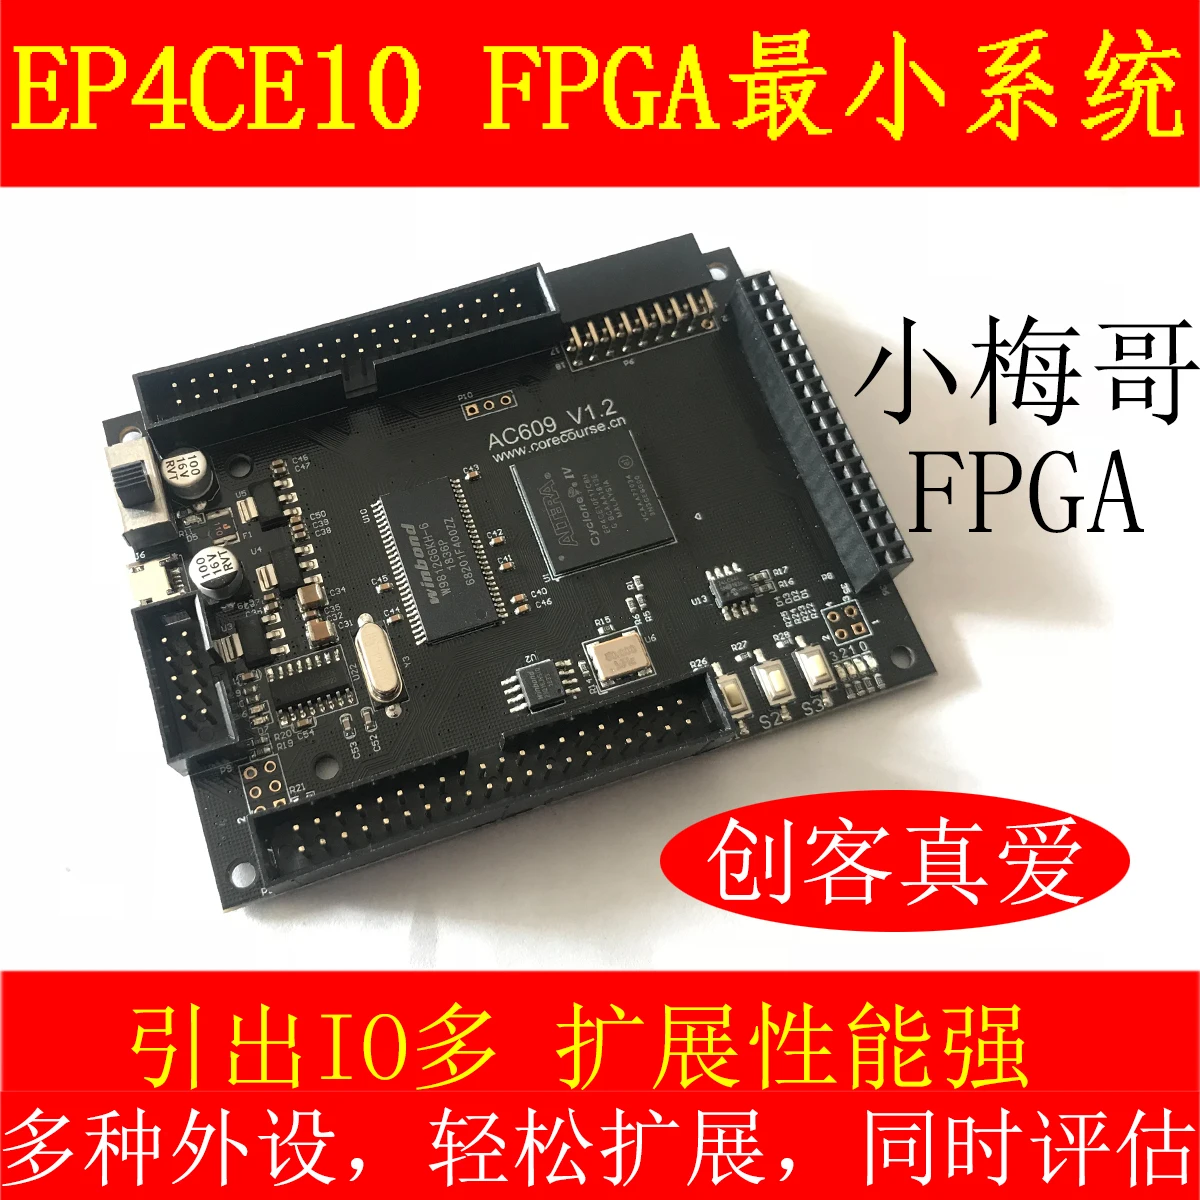 

FPGA EP4CE6 / E10, FPGA Core Board / Development Board / Minimum System, Model AC609